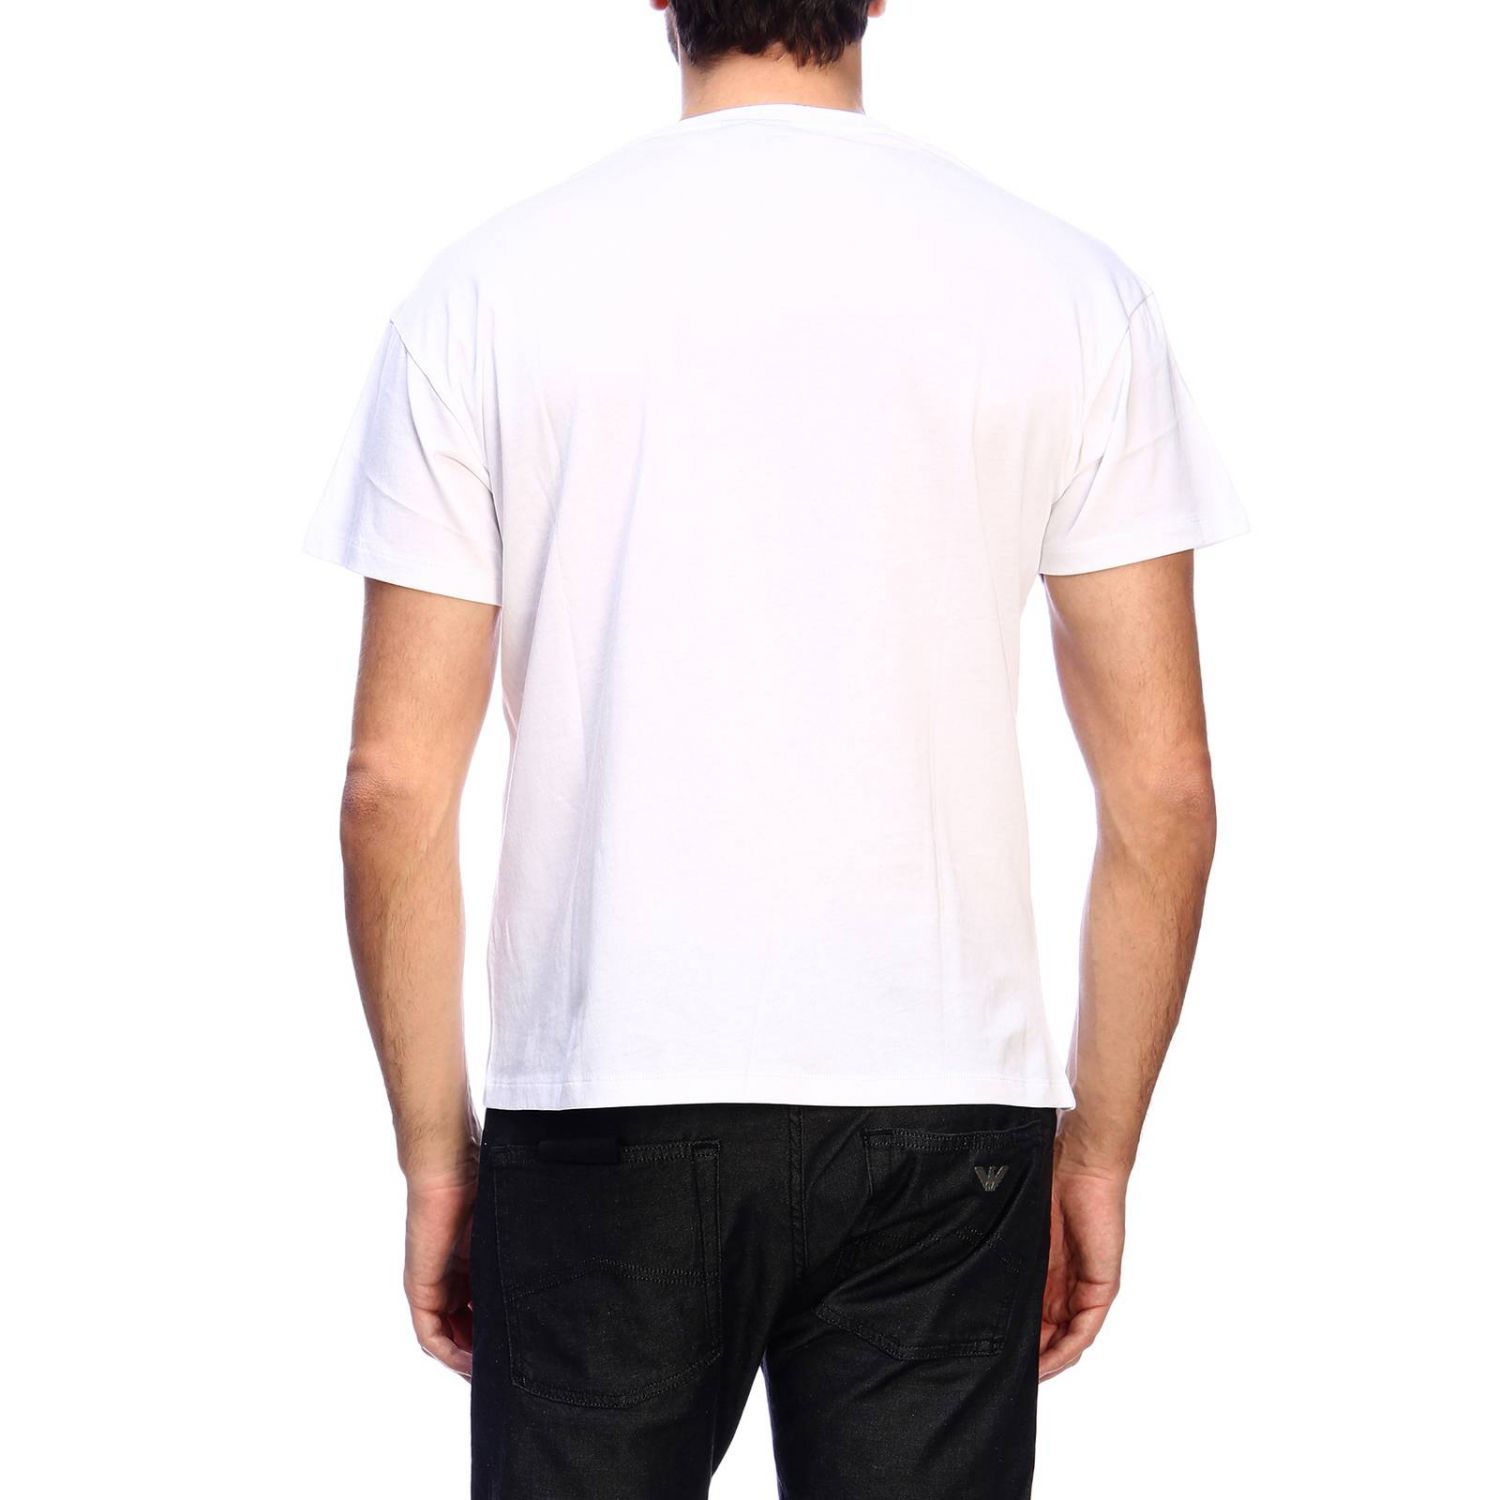 Emporio Armani Outlet: T-shirt men - White | T-Shirt Emporio Armani ...